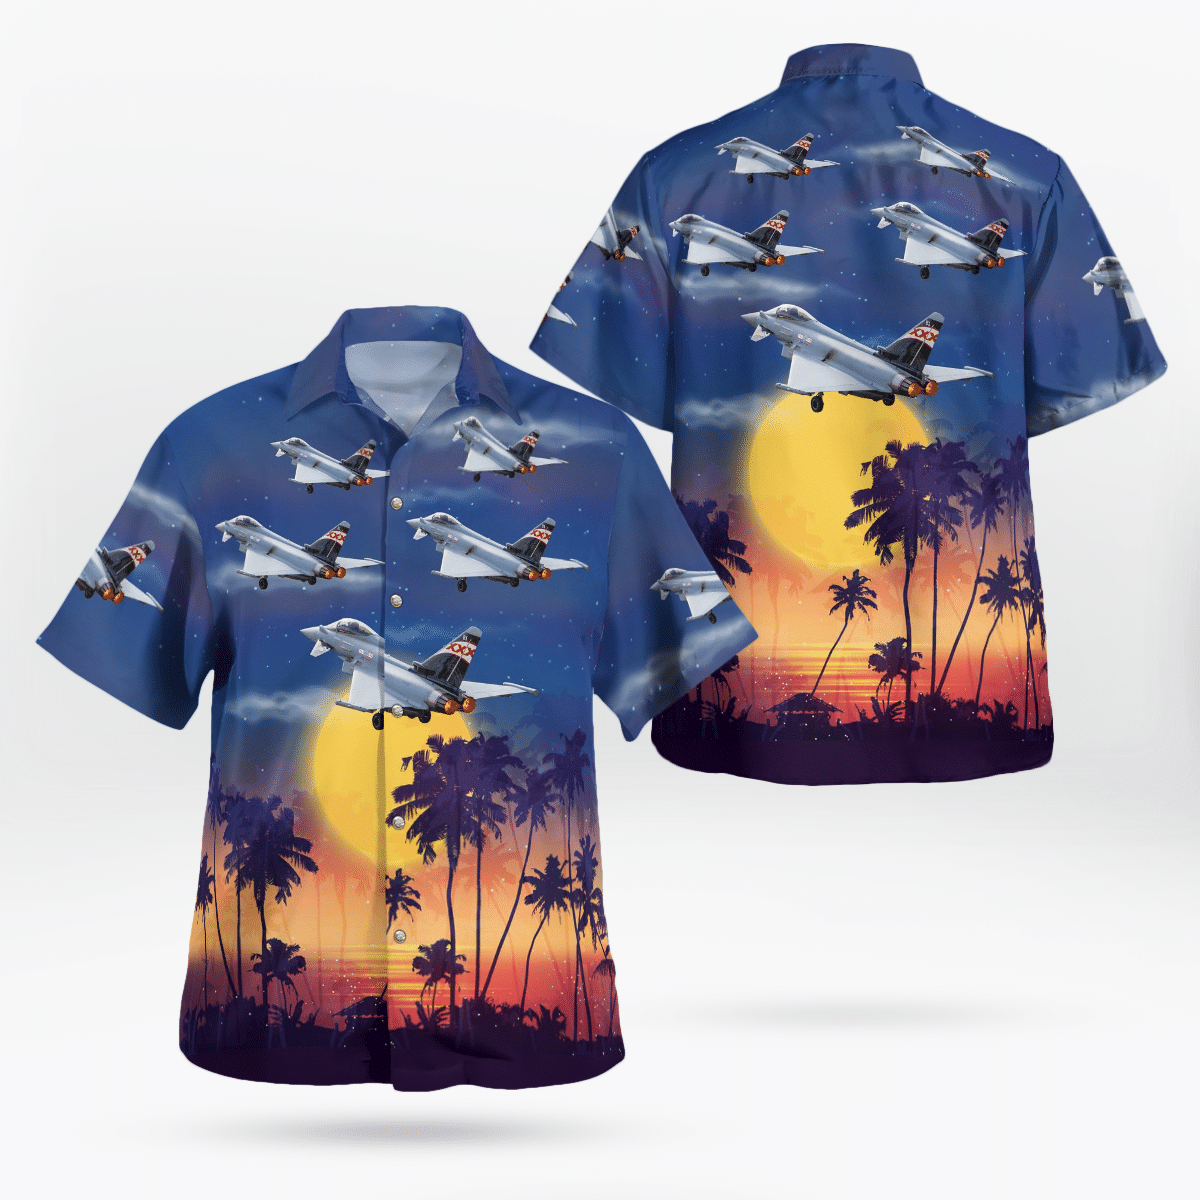 Best Hawaiian shirts 2022 250